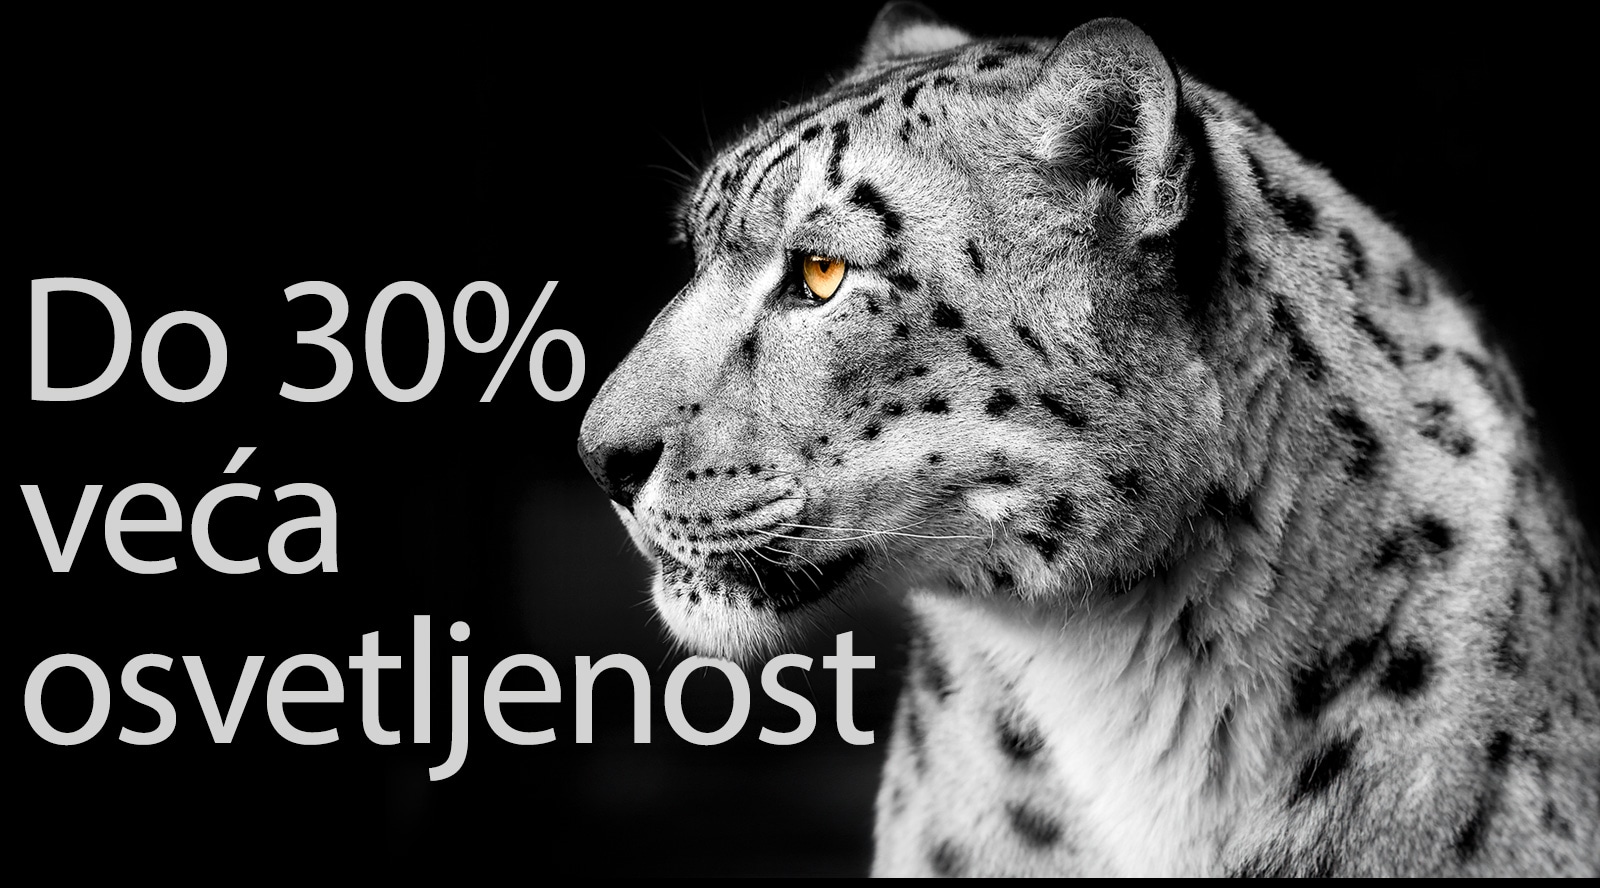 Profil belog leoparda sa leve strane slike. Reči „Do 30% veća osvetljenost“ prikazuju se sa leve strane.